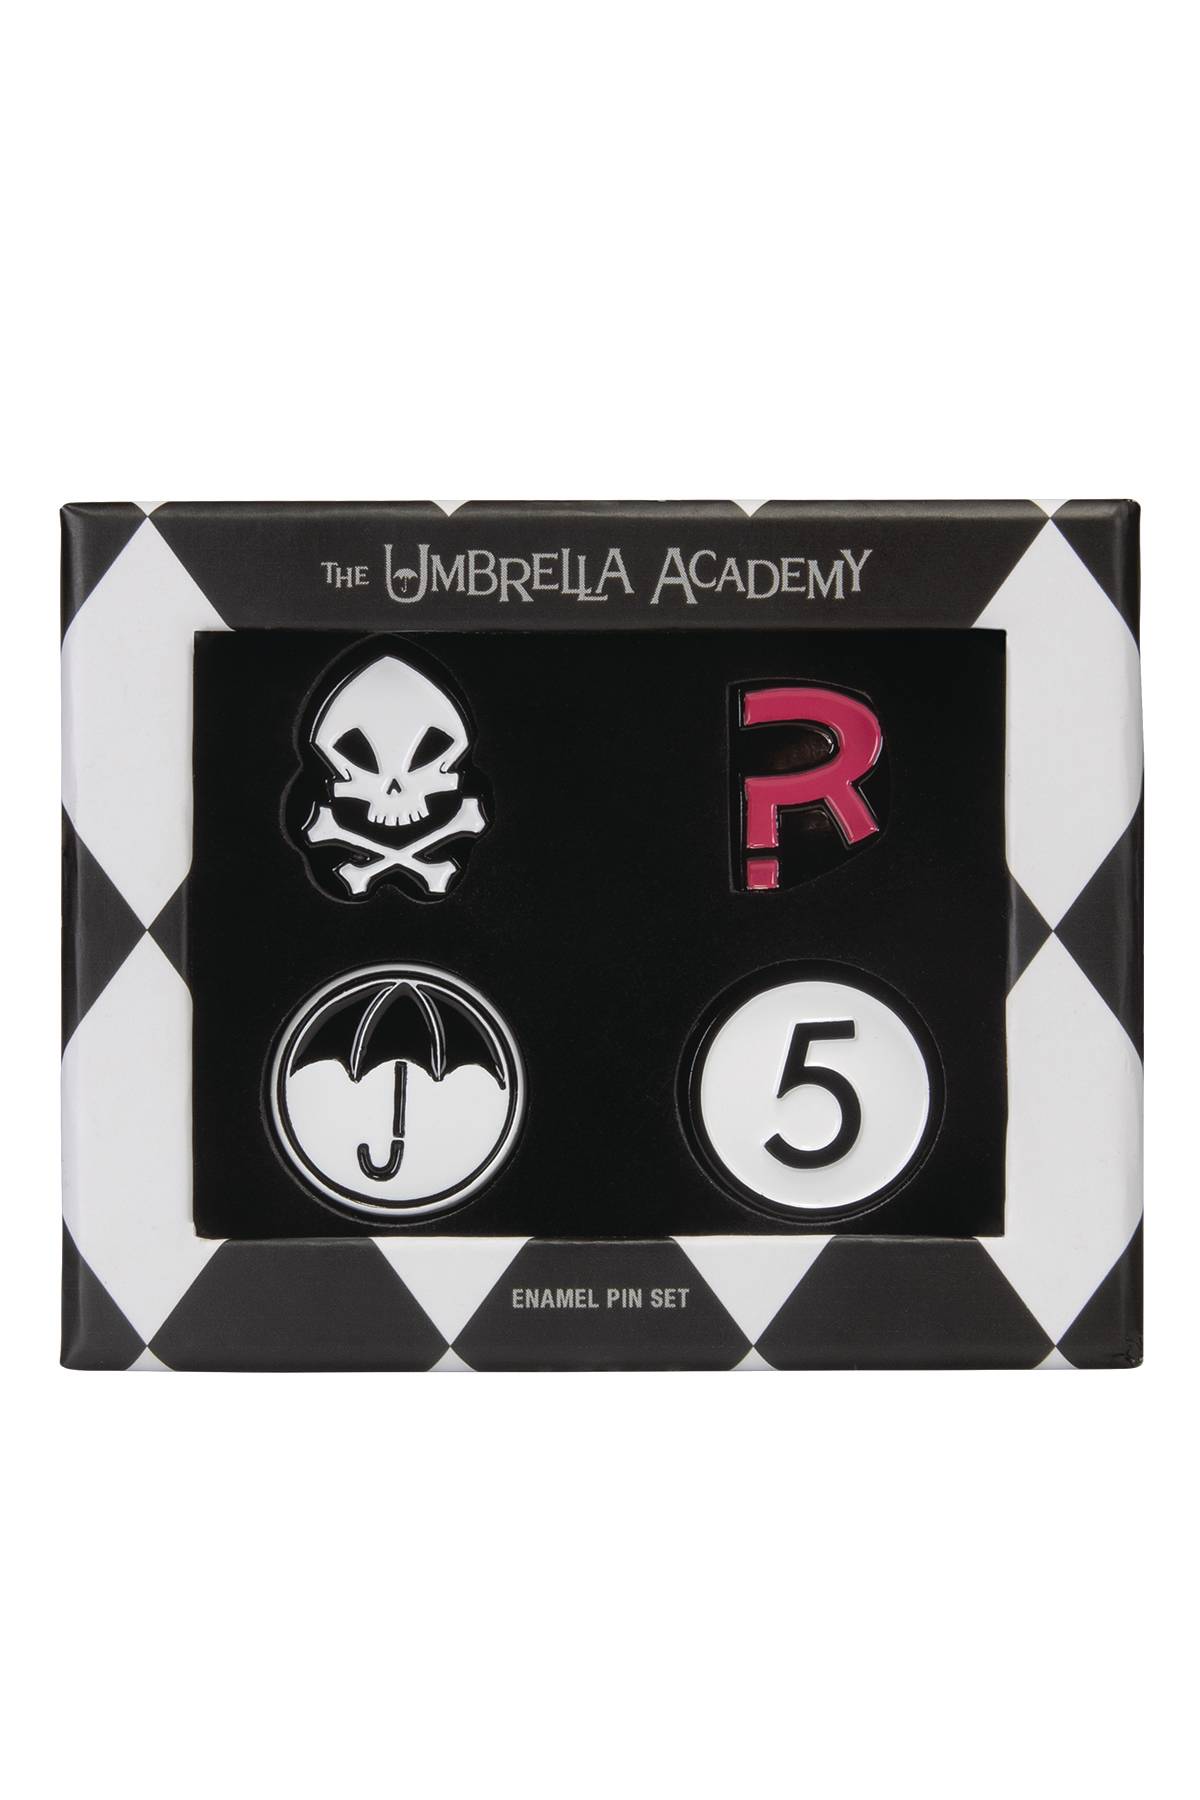 Umbrella Academy Enamel Pin Set